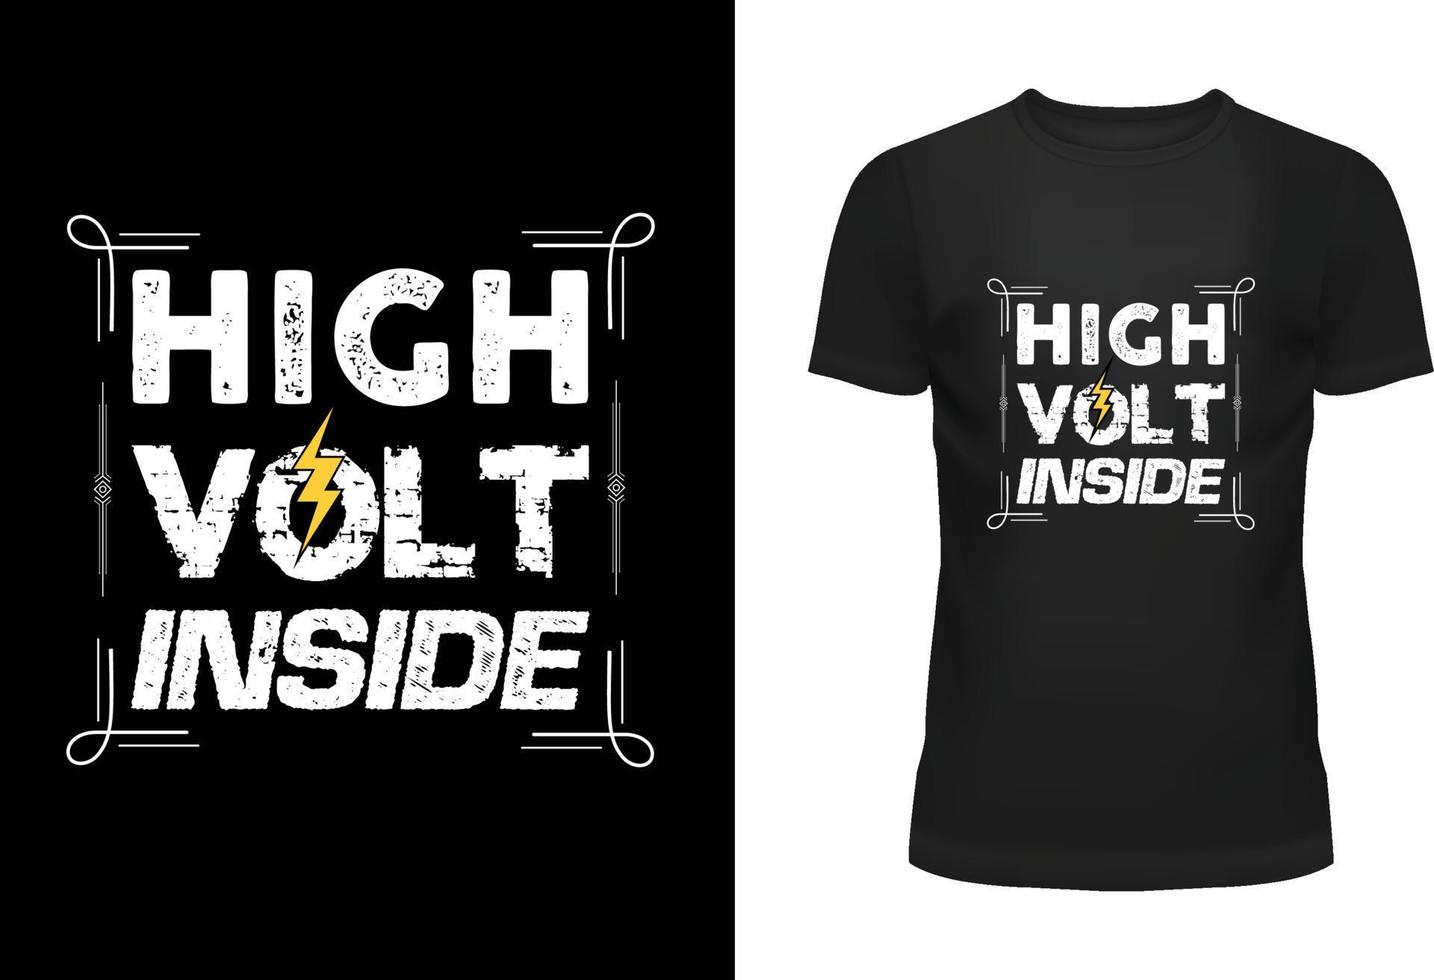 High volt inside t shirt design vector